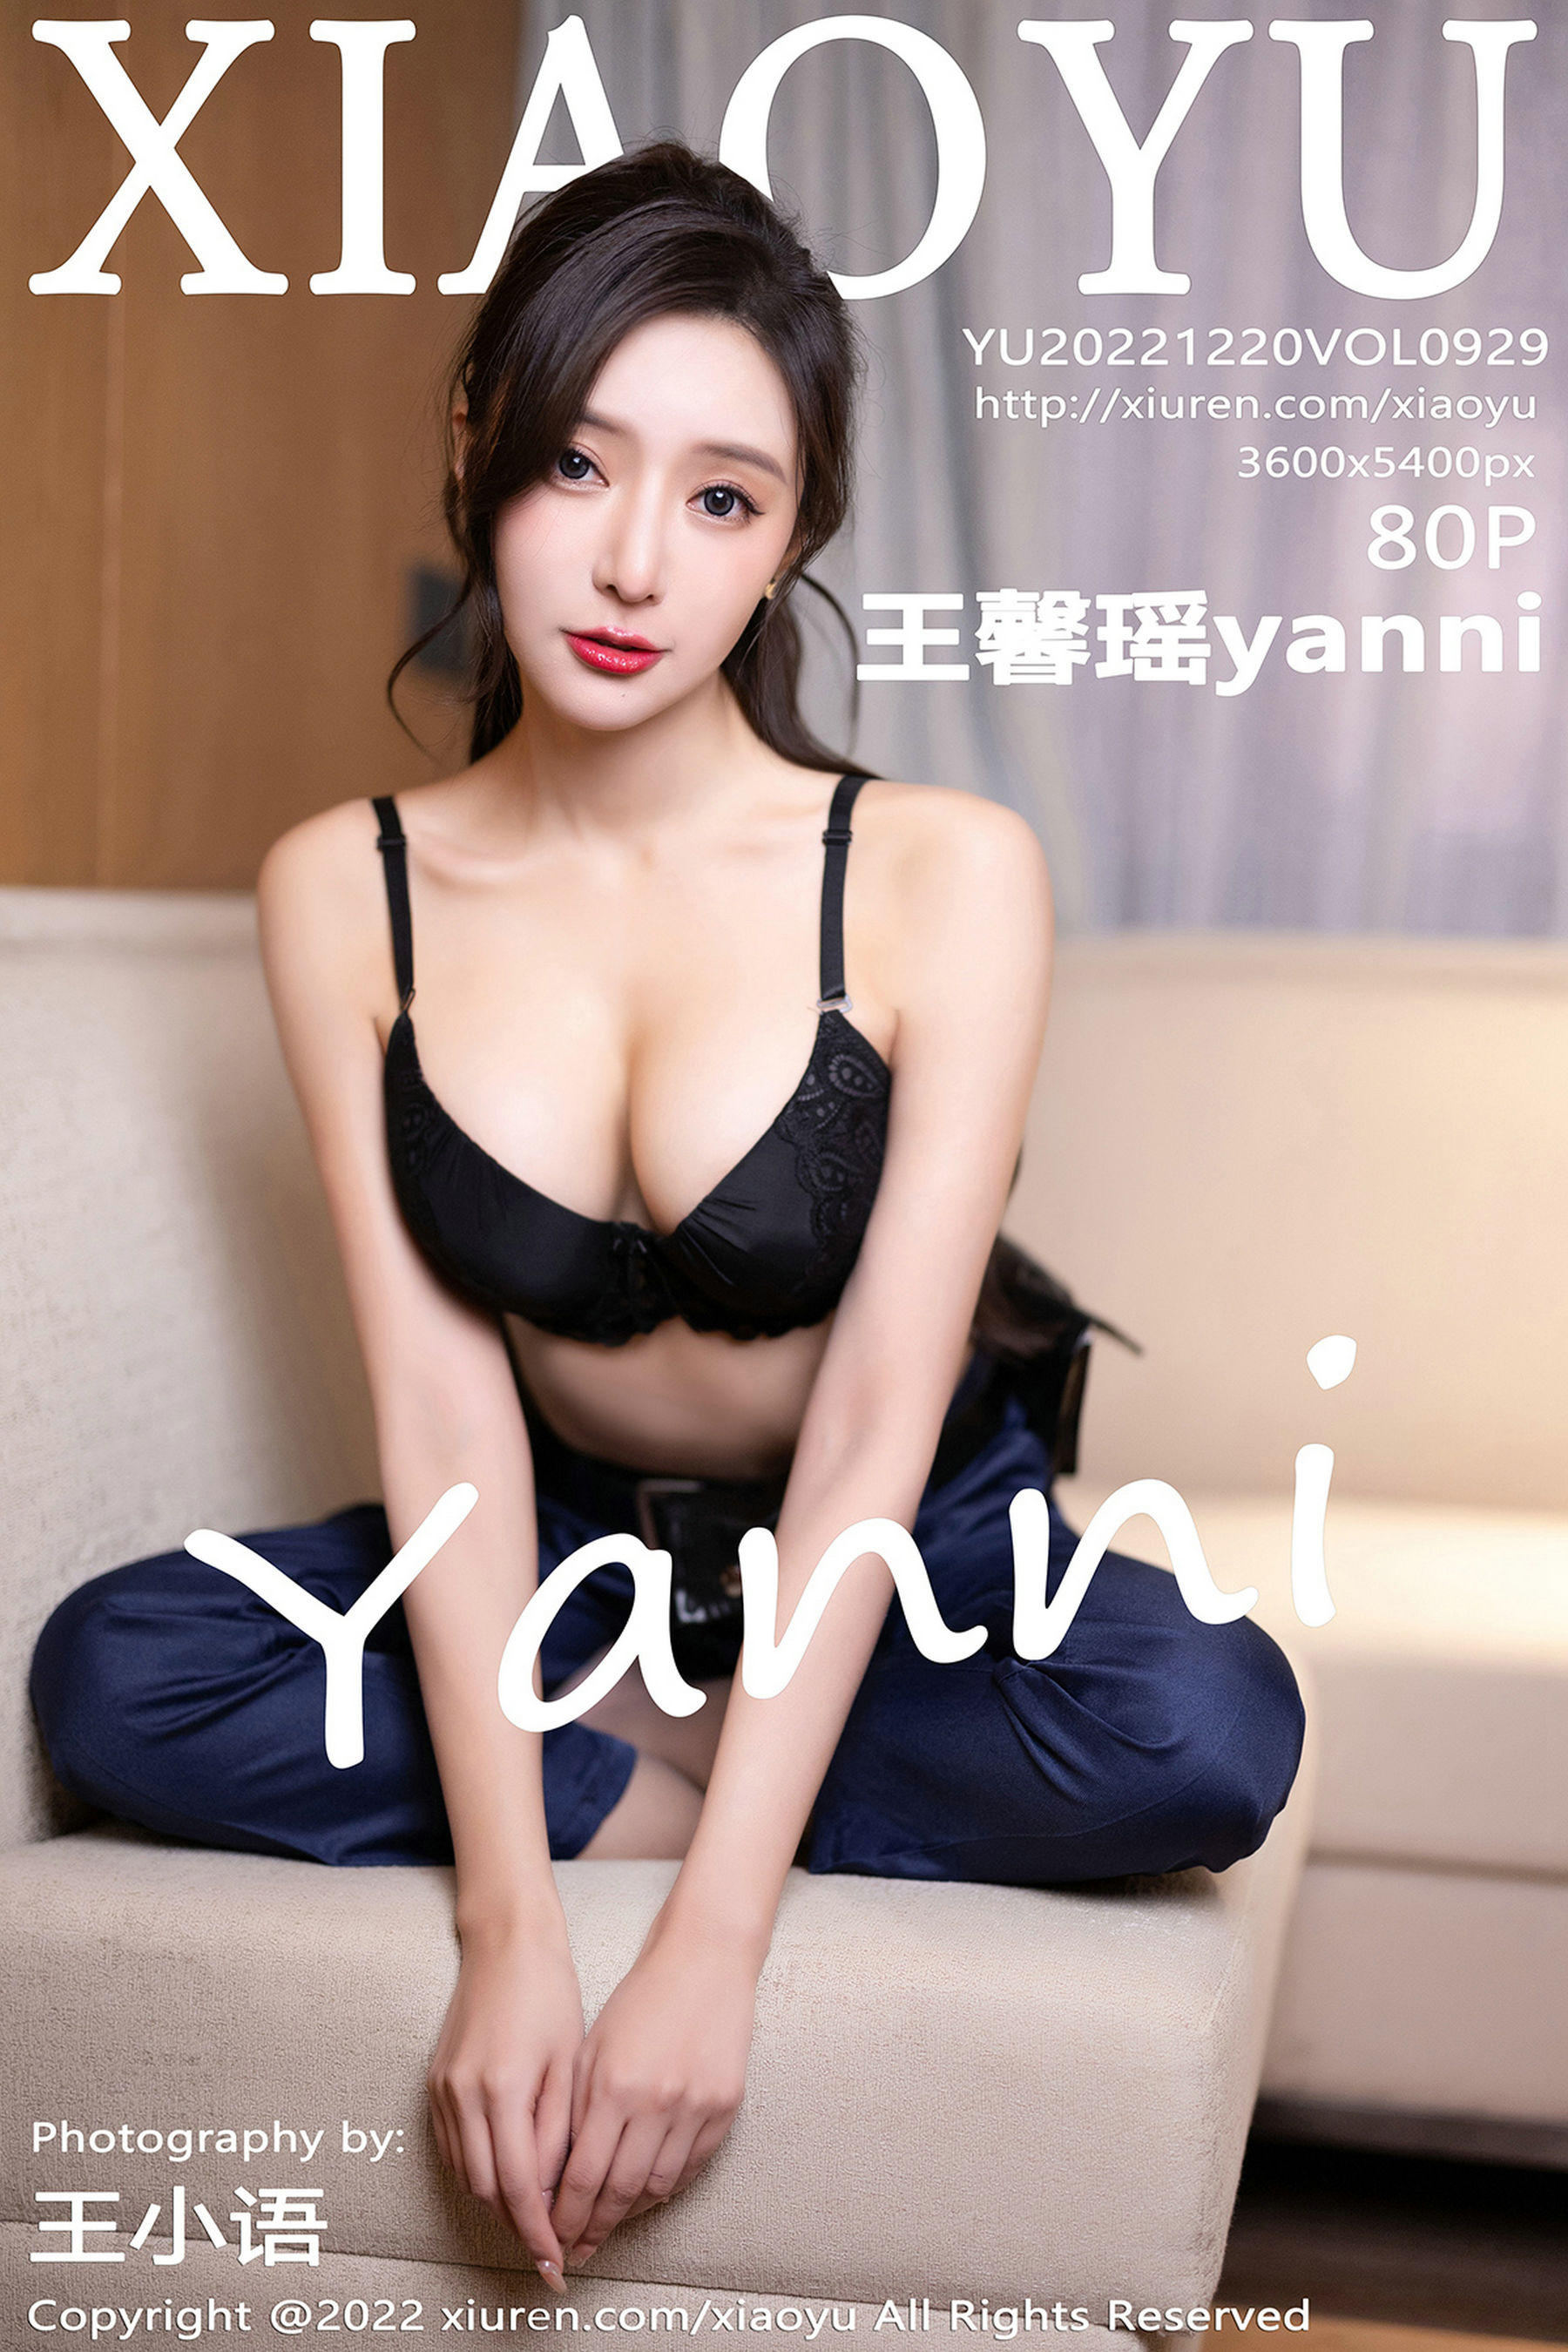 [语画界XIAOYU] Vol.929 王馨瑶yanni1